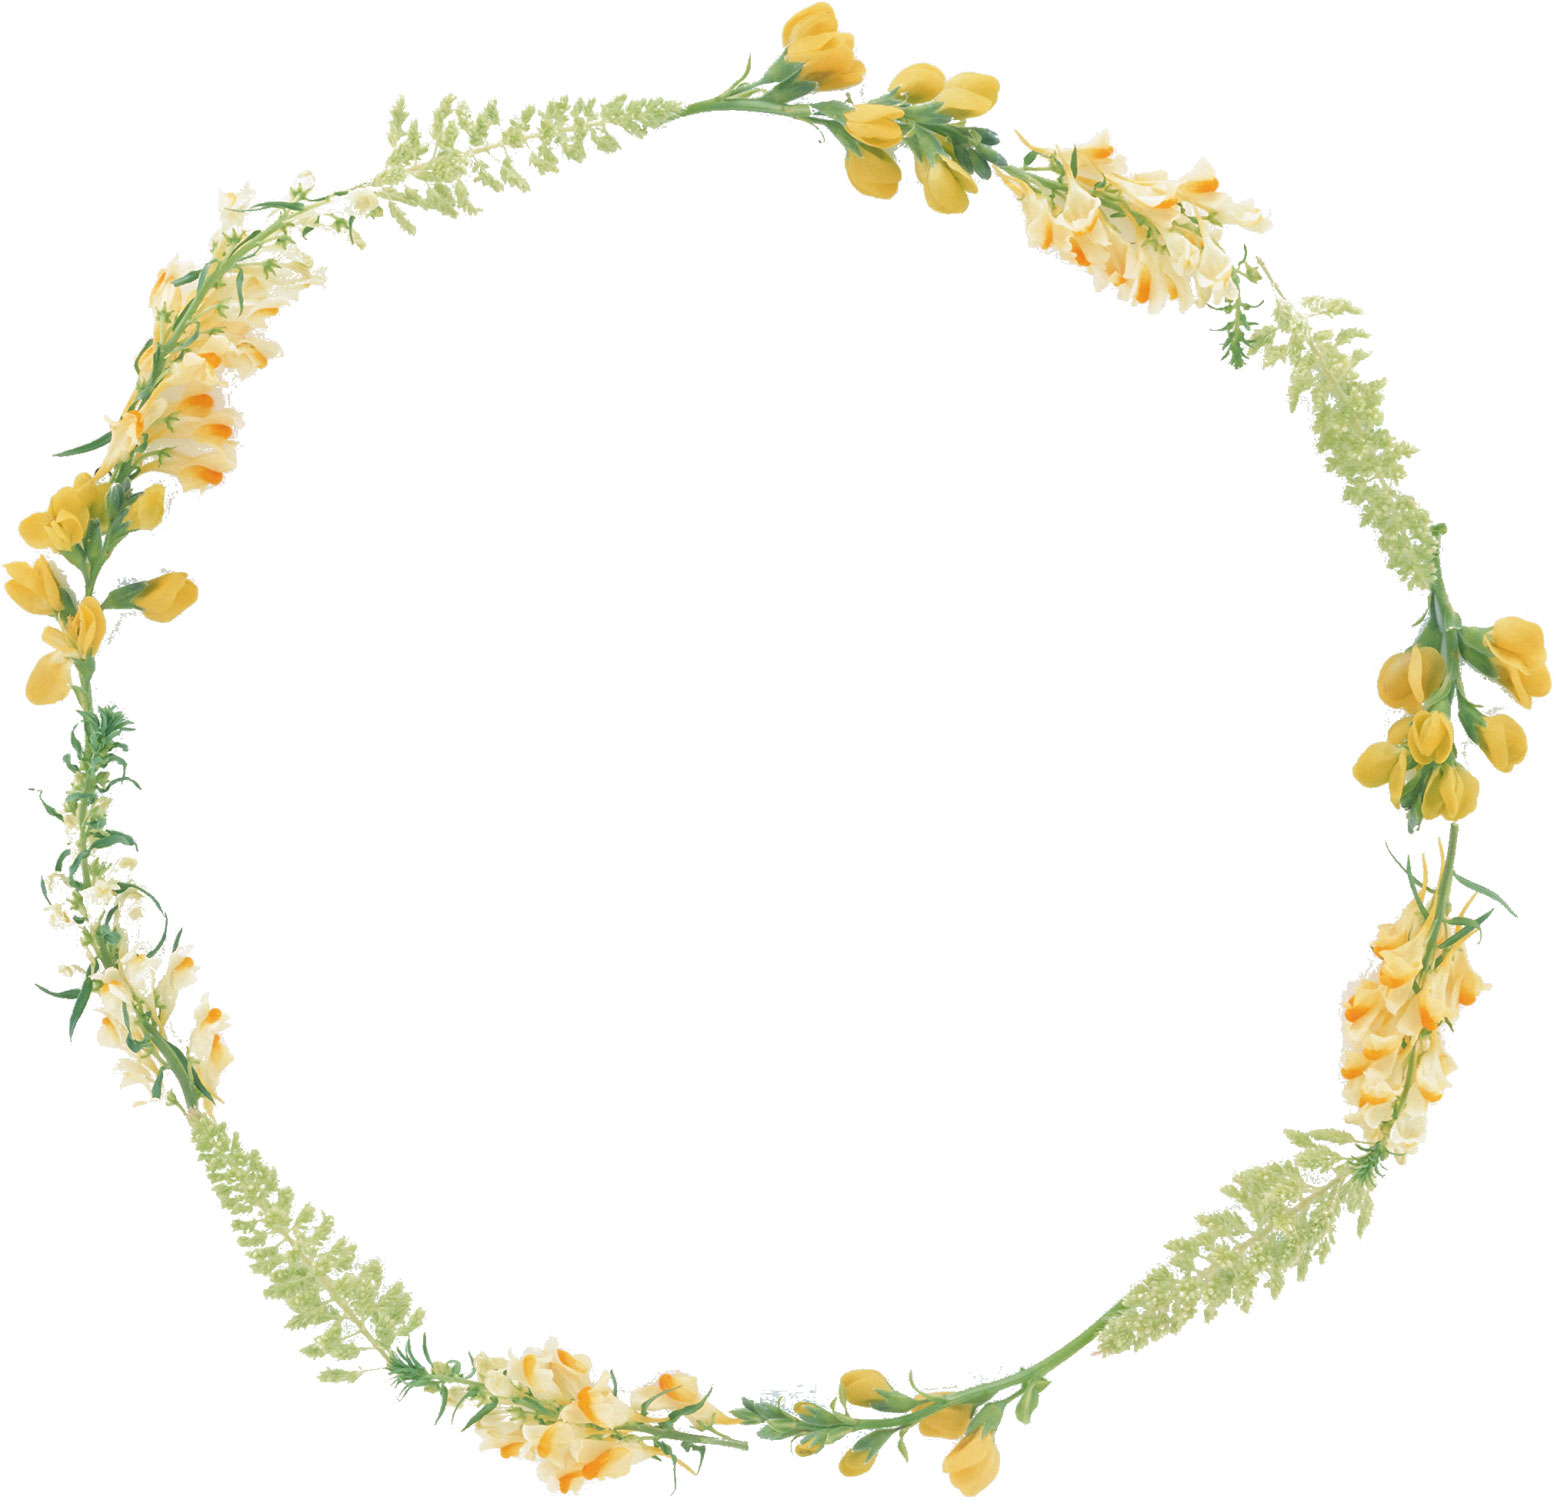 花や葉の写真 画像 フリー素材 フレーム枠no 1014 黄 白 緑 葉 輪